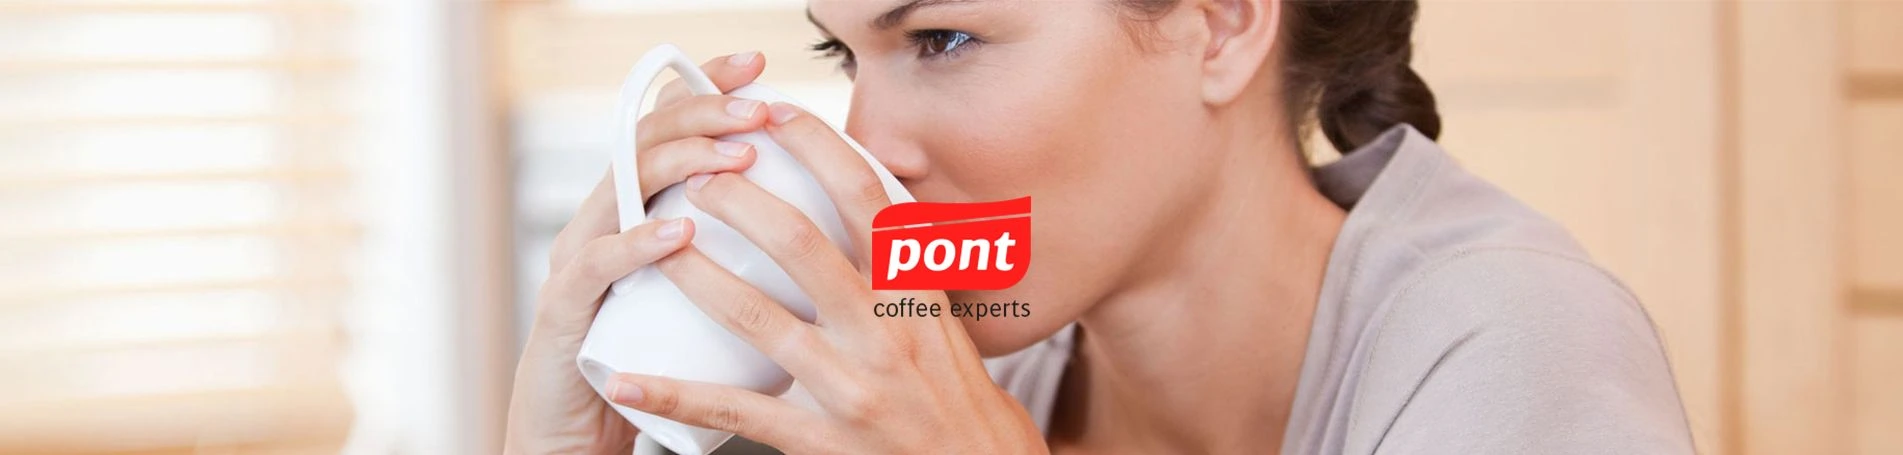 Cafés Pont estrena nueva web para expandirse y crecer a Nivel Internacional